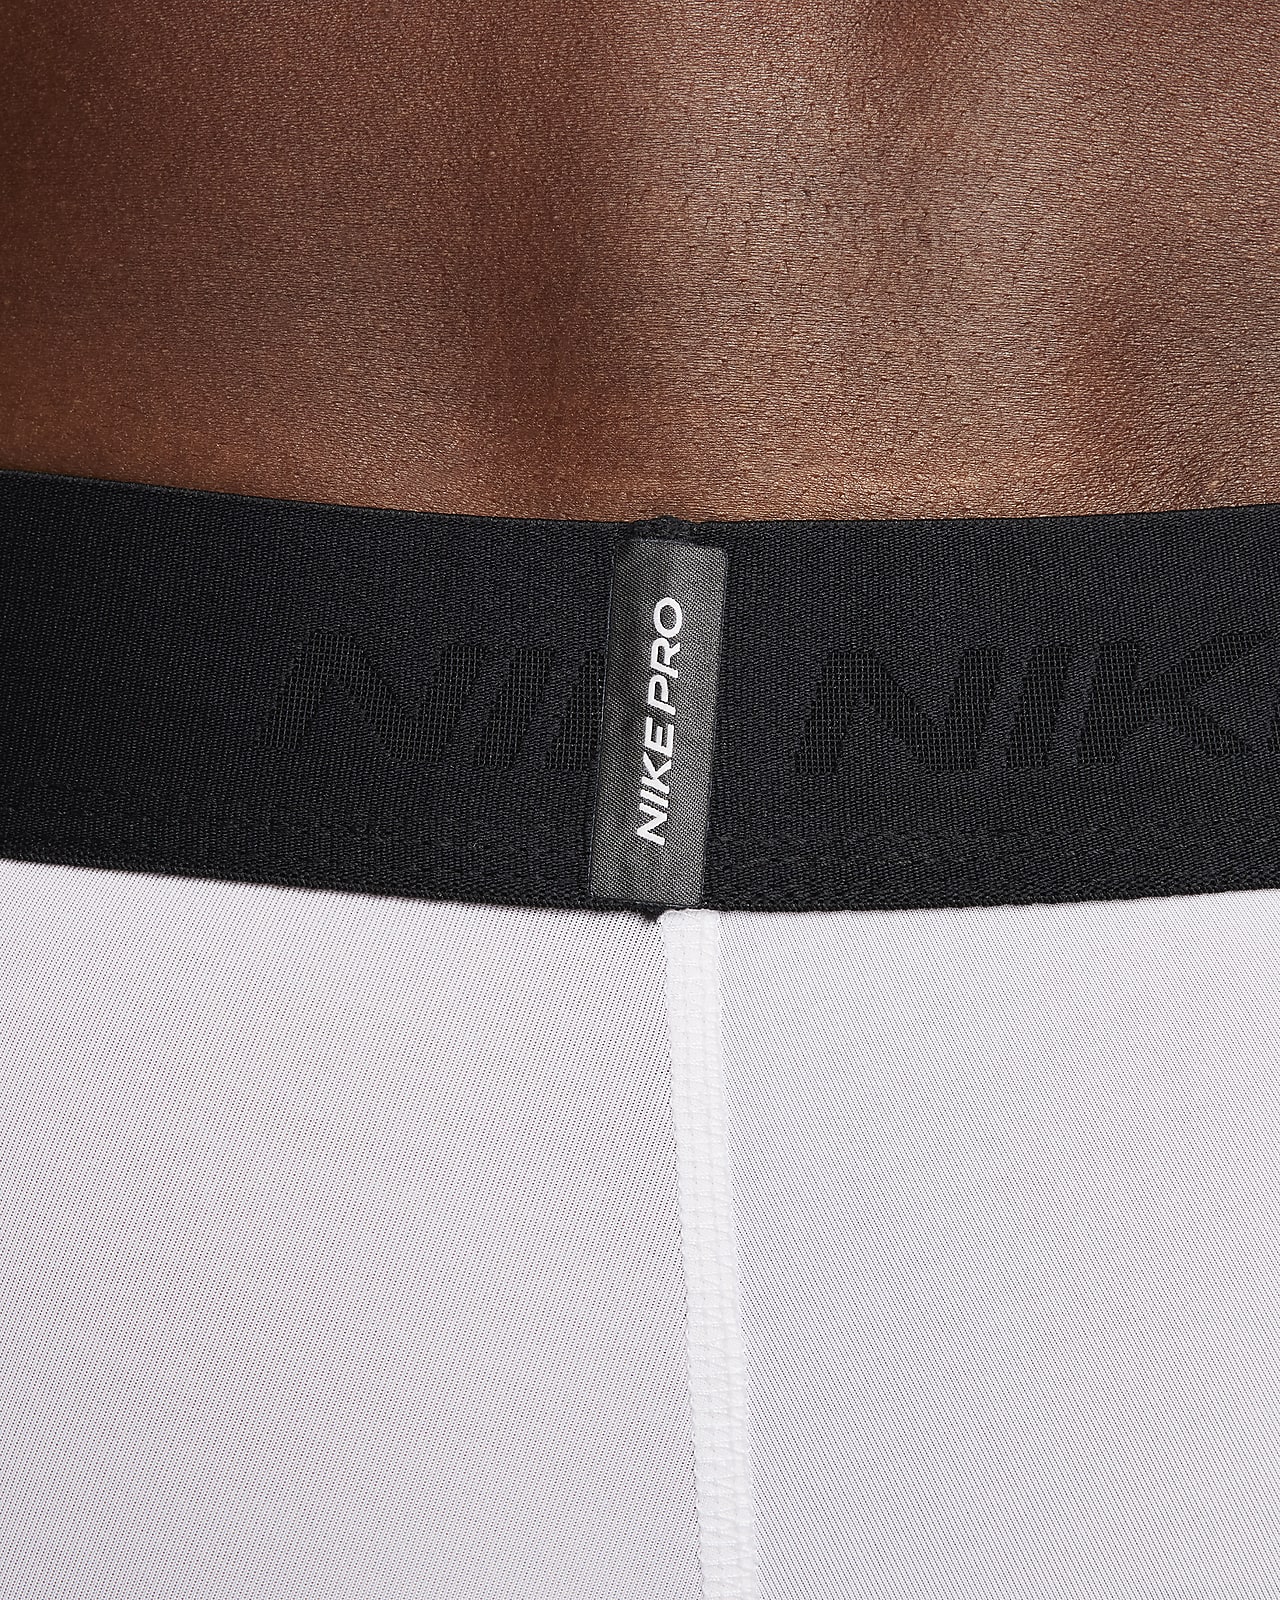 Nike Pro Men's Dri-FIT Fitness Tights